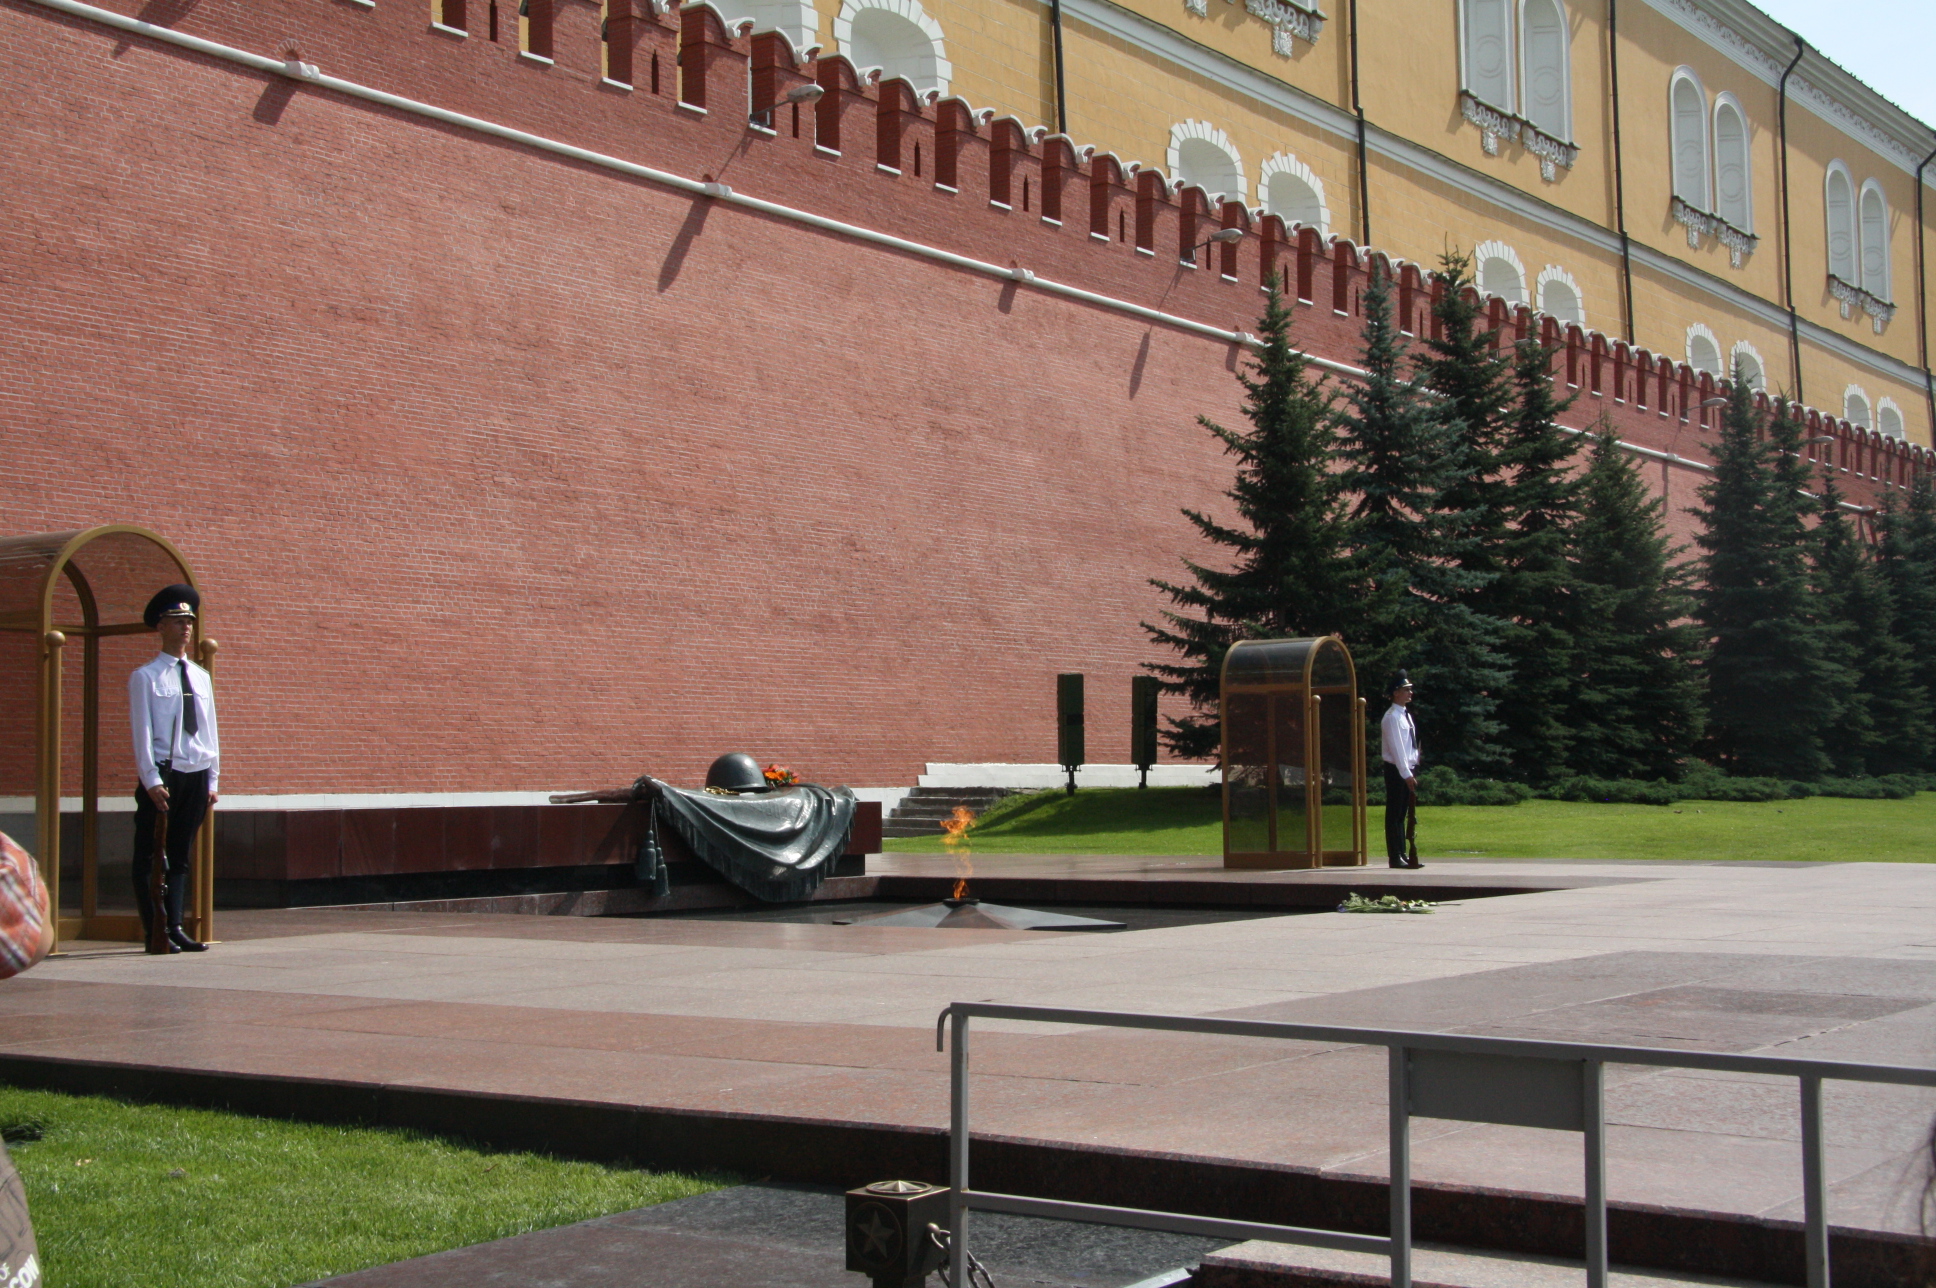 Москва александровский сад фото с описанием достопримечательности